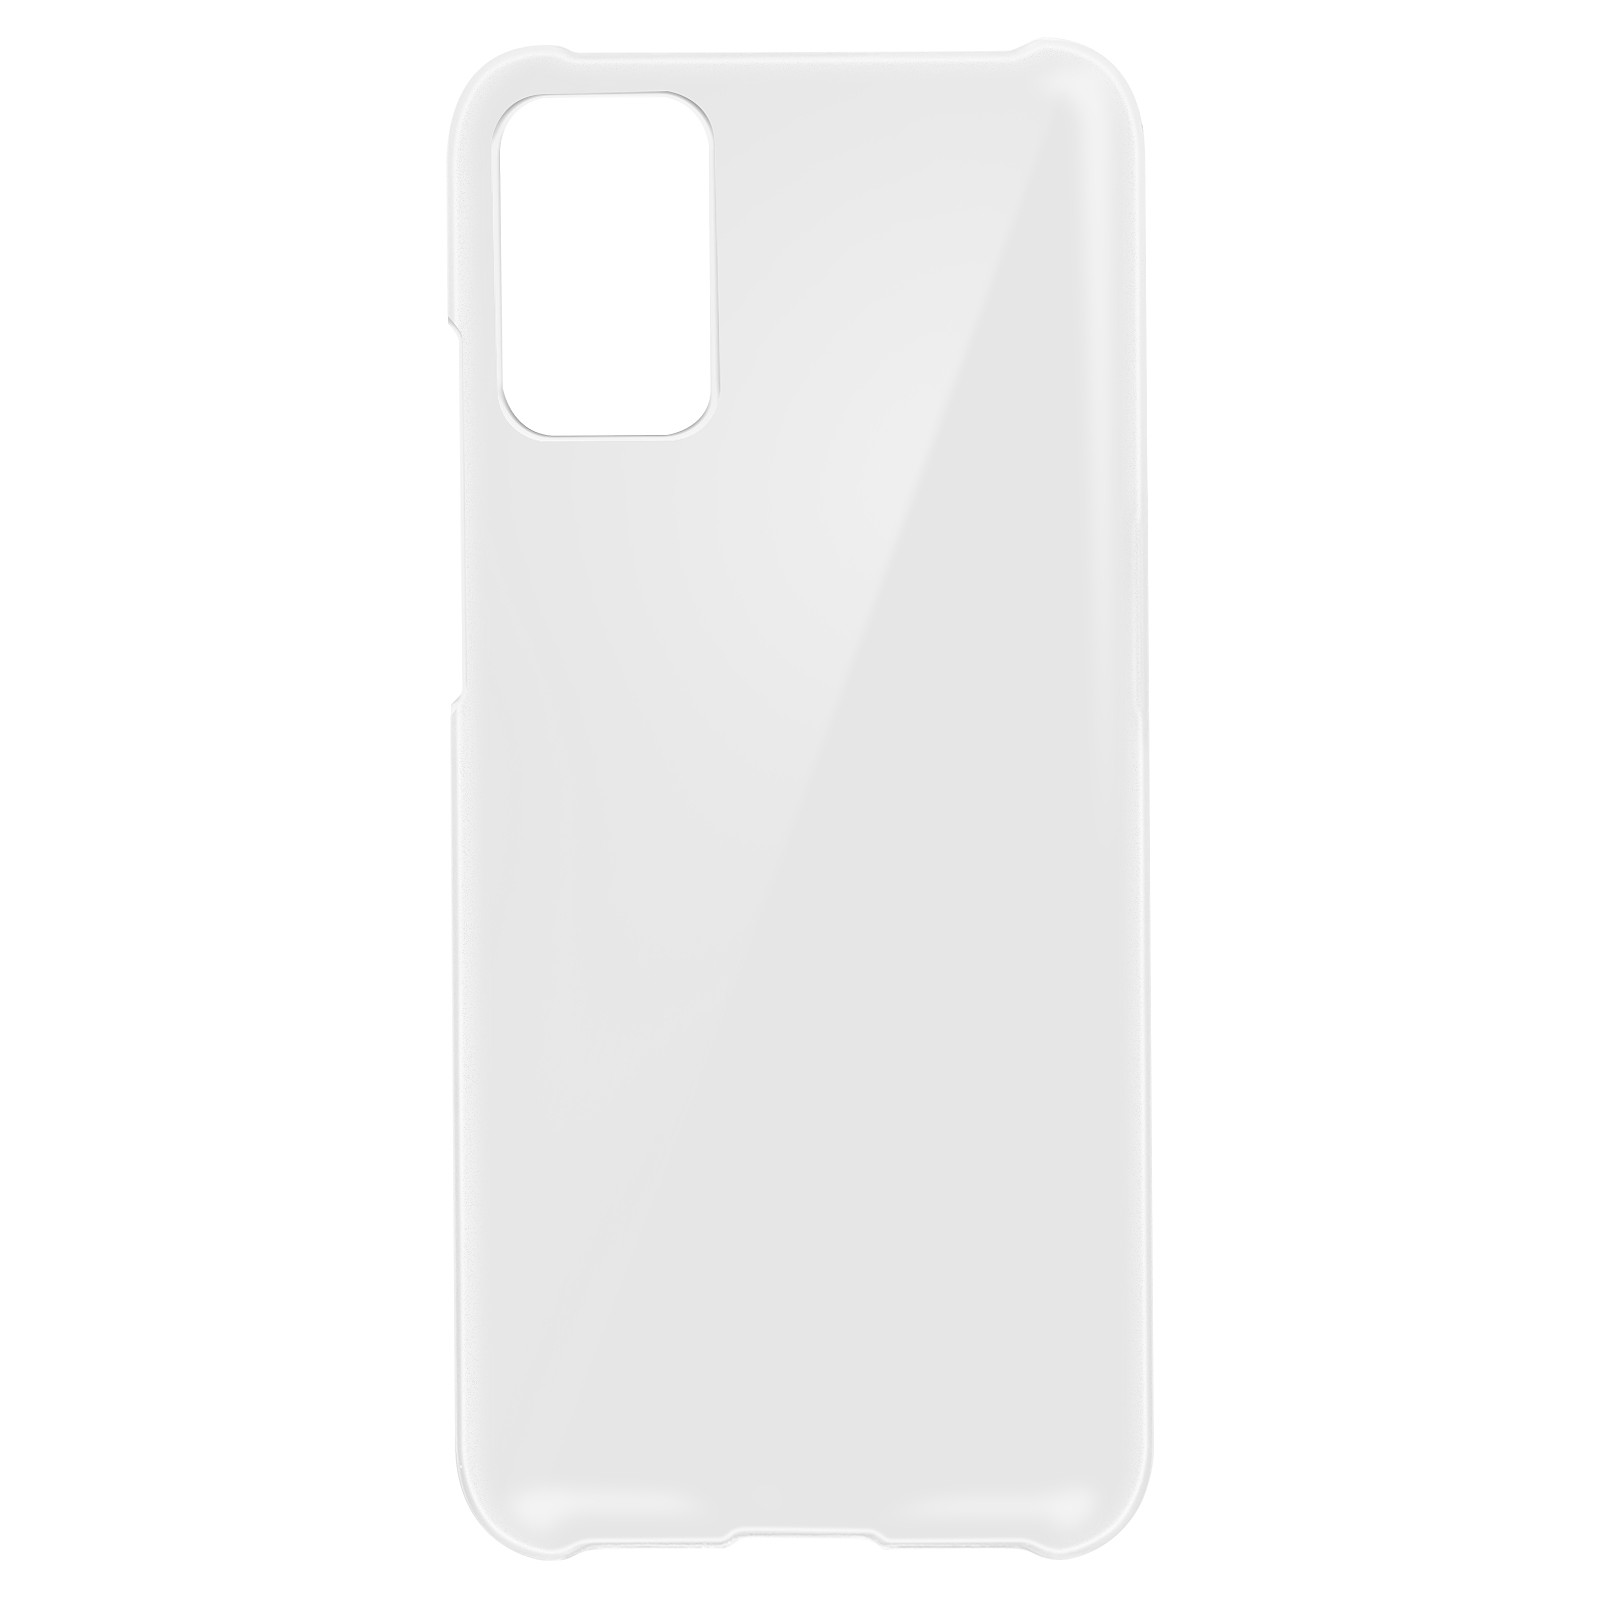 Avizar Coque pour Xiaomi Redmi 9T / Poco M3 Protection Rigide Antichoc Anti-traces Blanc Givre - Coque telephone Avizar